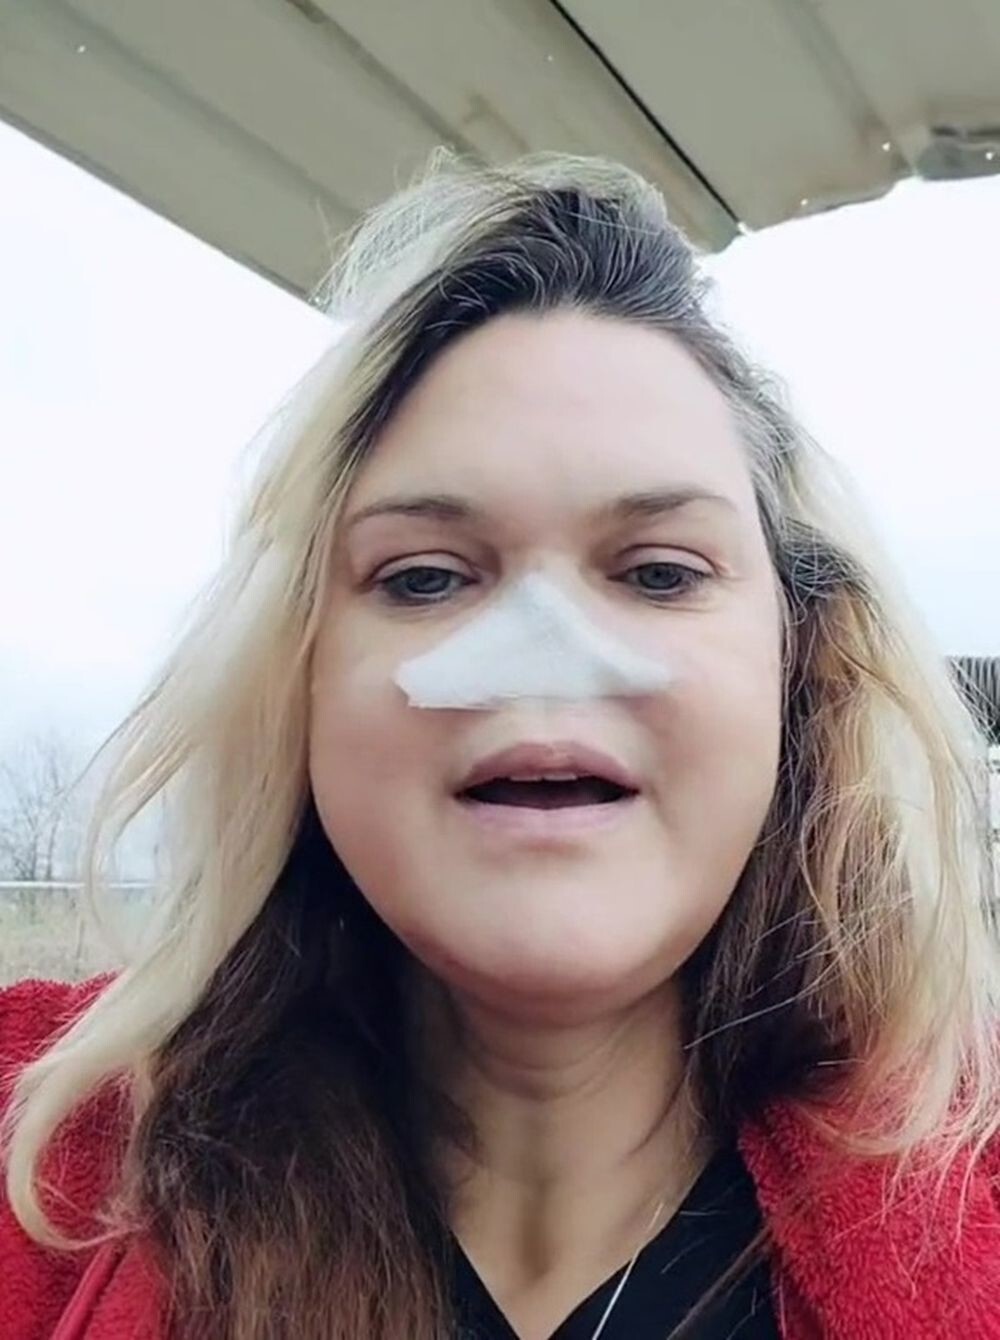 Лишившаяся носа женщина решила отказаться от протеза